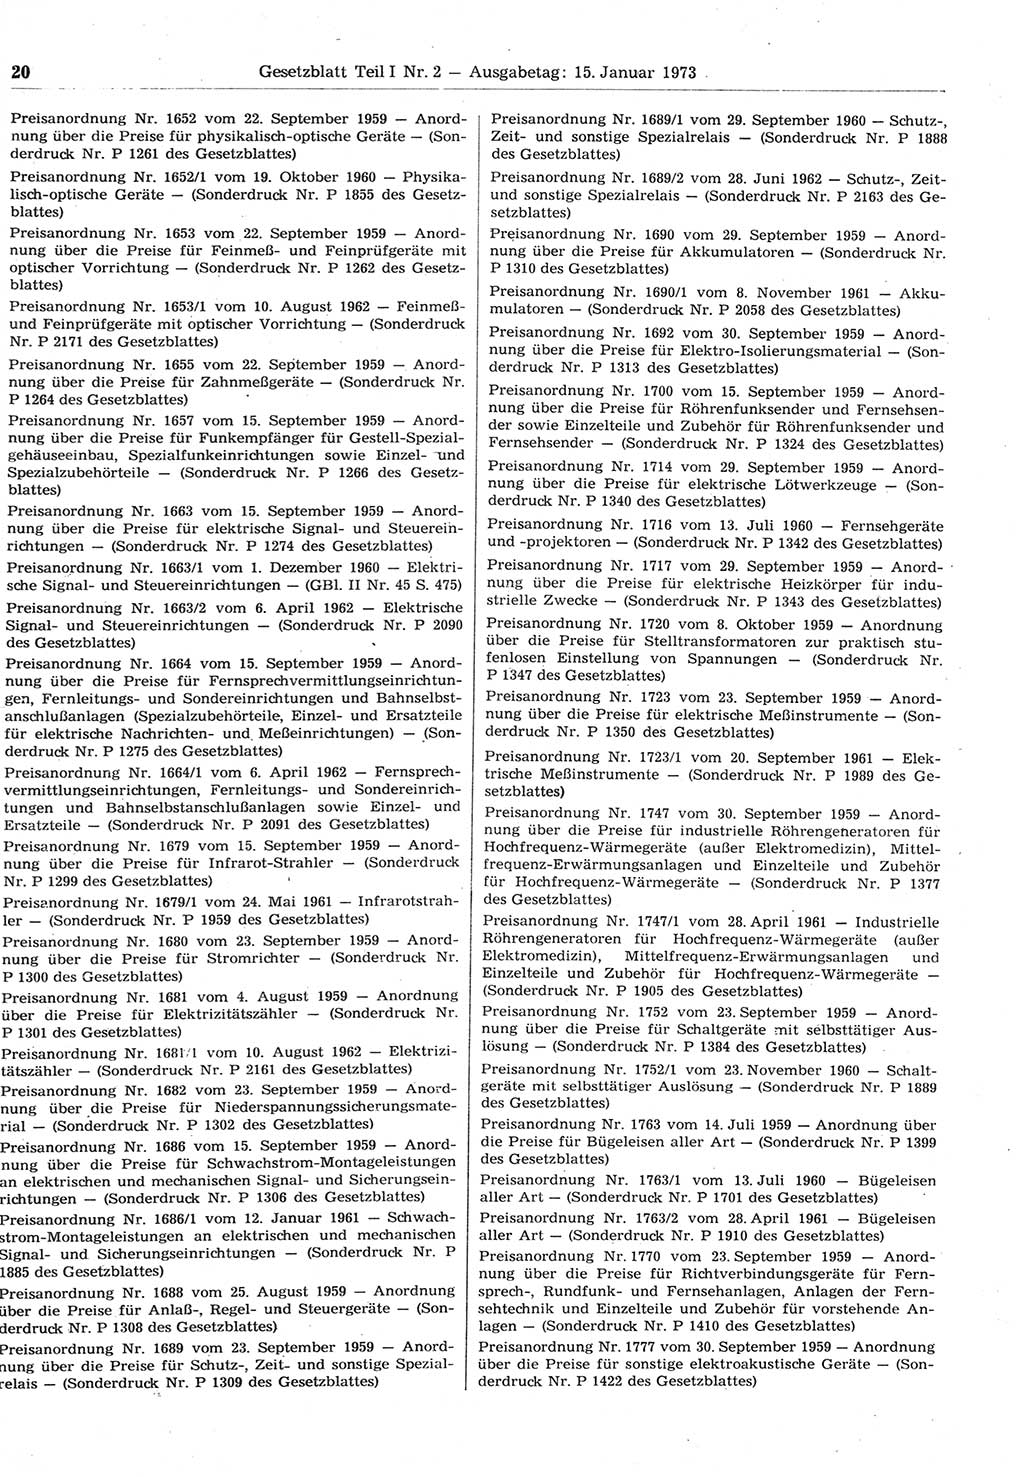 Gesetzblatt (GBl.) der Deutschen Demokratischen Republik (DDR) Teil Ⅰ 1973, Seite 20 (GBl. DDR Ⅰ 1973, S. 20)